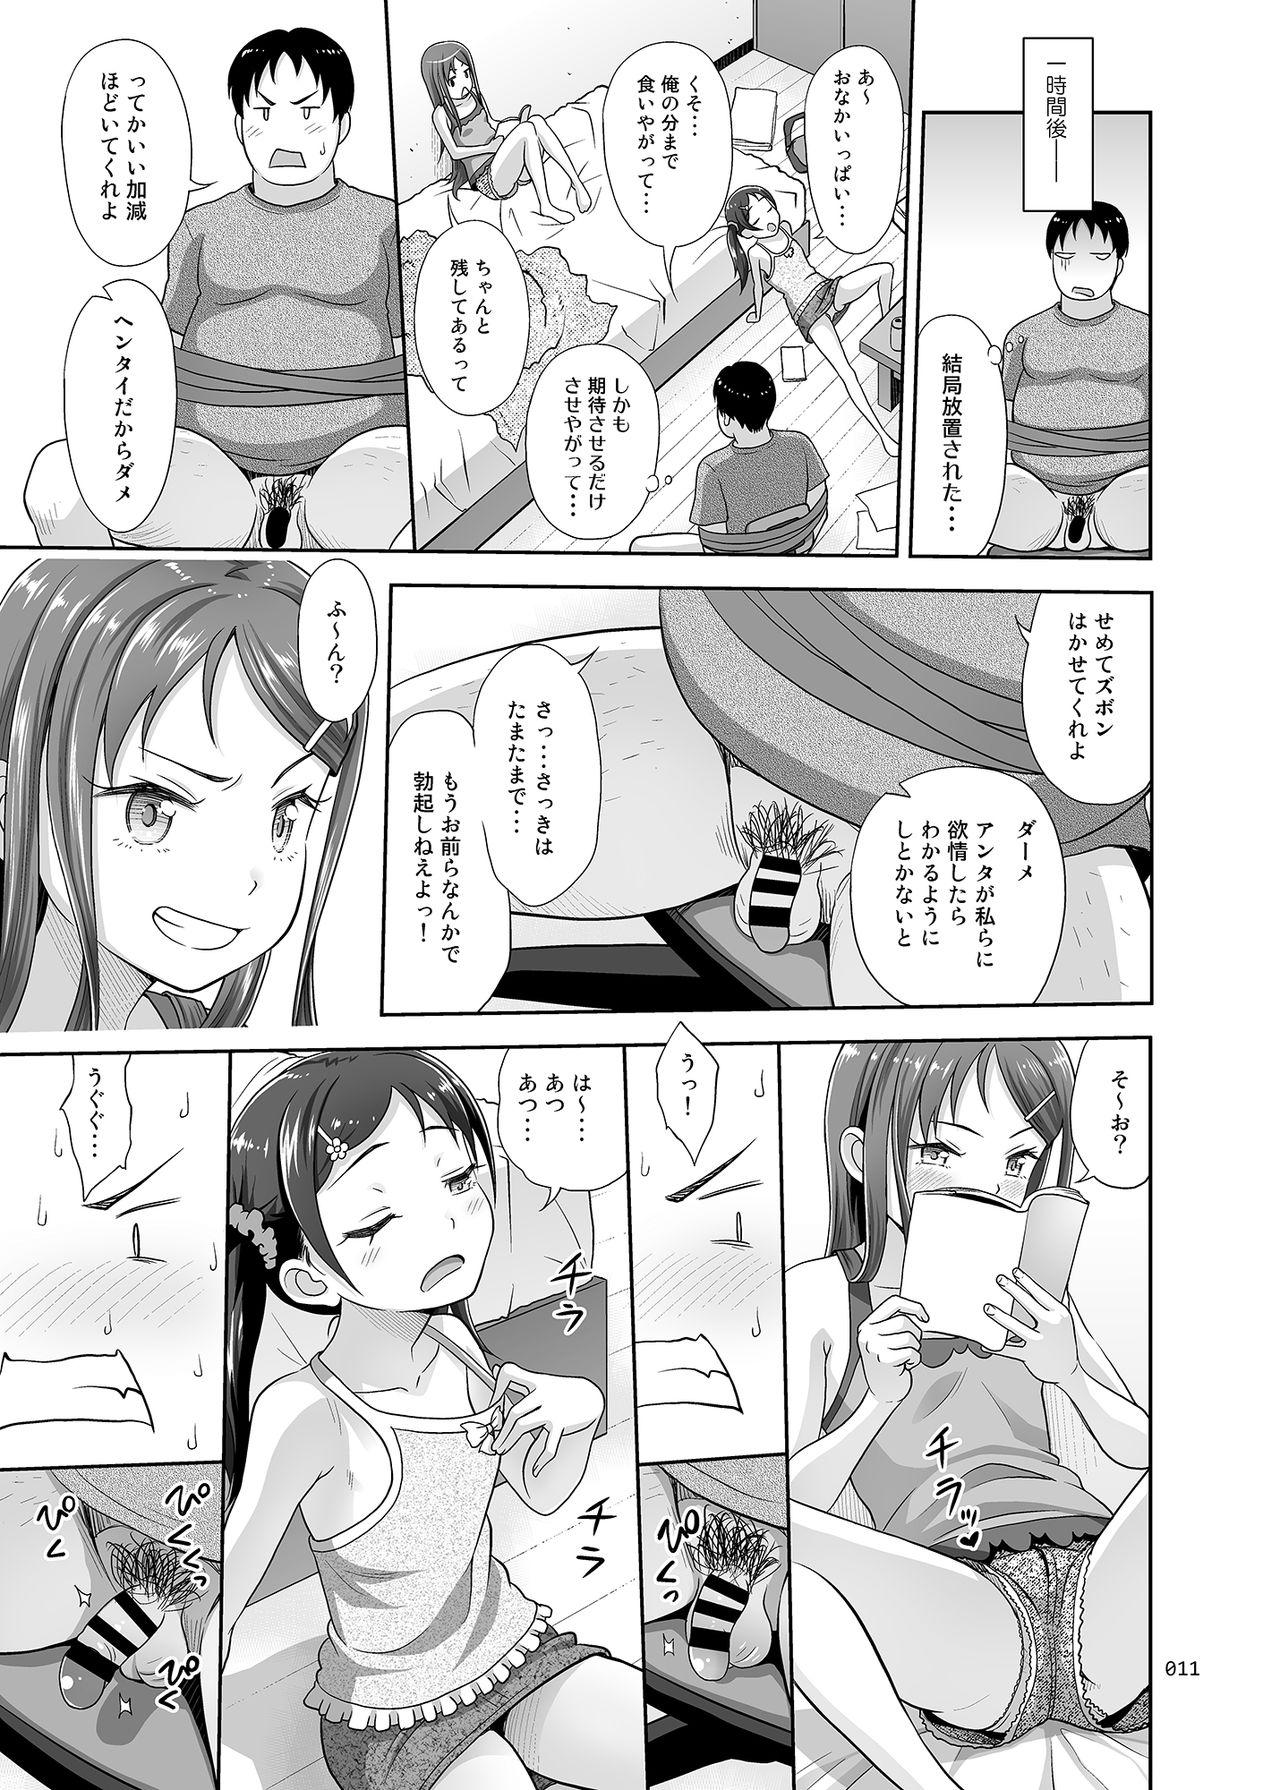 Freaky めいっこあくま - Original Ore no imouto ga konna ni kawaii wake ga nai | my little sister cant be this cute Culo - Page 10